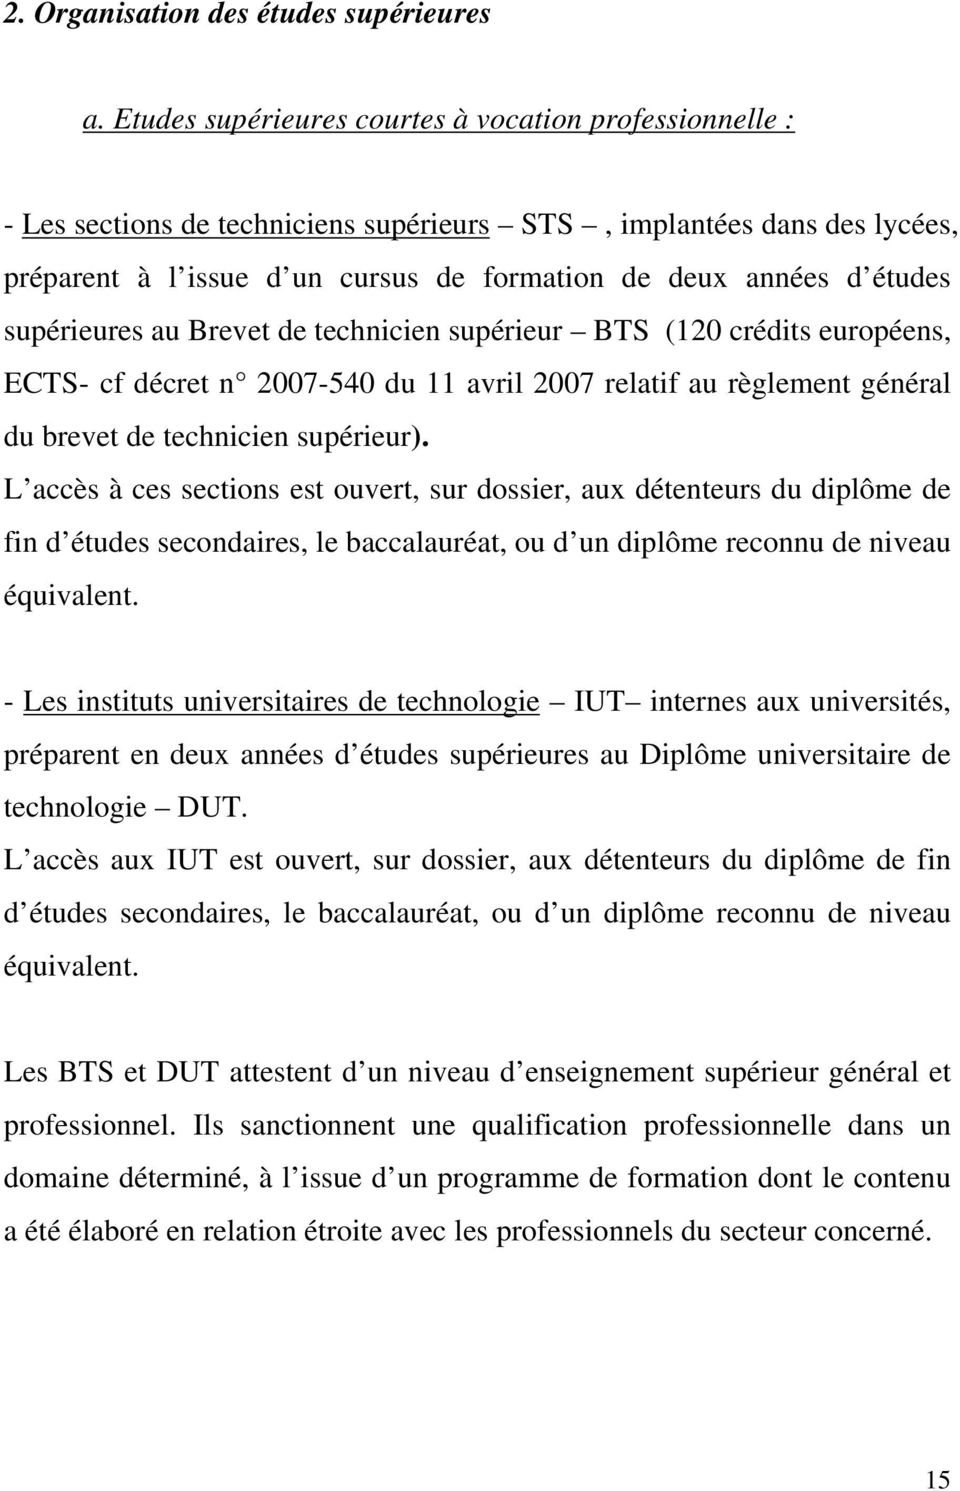 supérieures au Brevet de technicien supérieur BTS (120 crédits européens, ECTS- cf décret n 2007-540 du 11 avril 2007 relatif au règlement général du brevet de technicien supérieur).